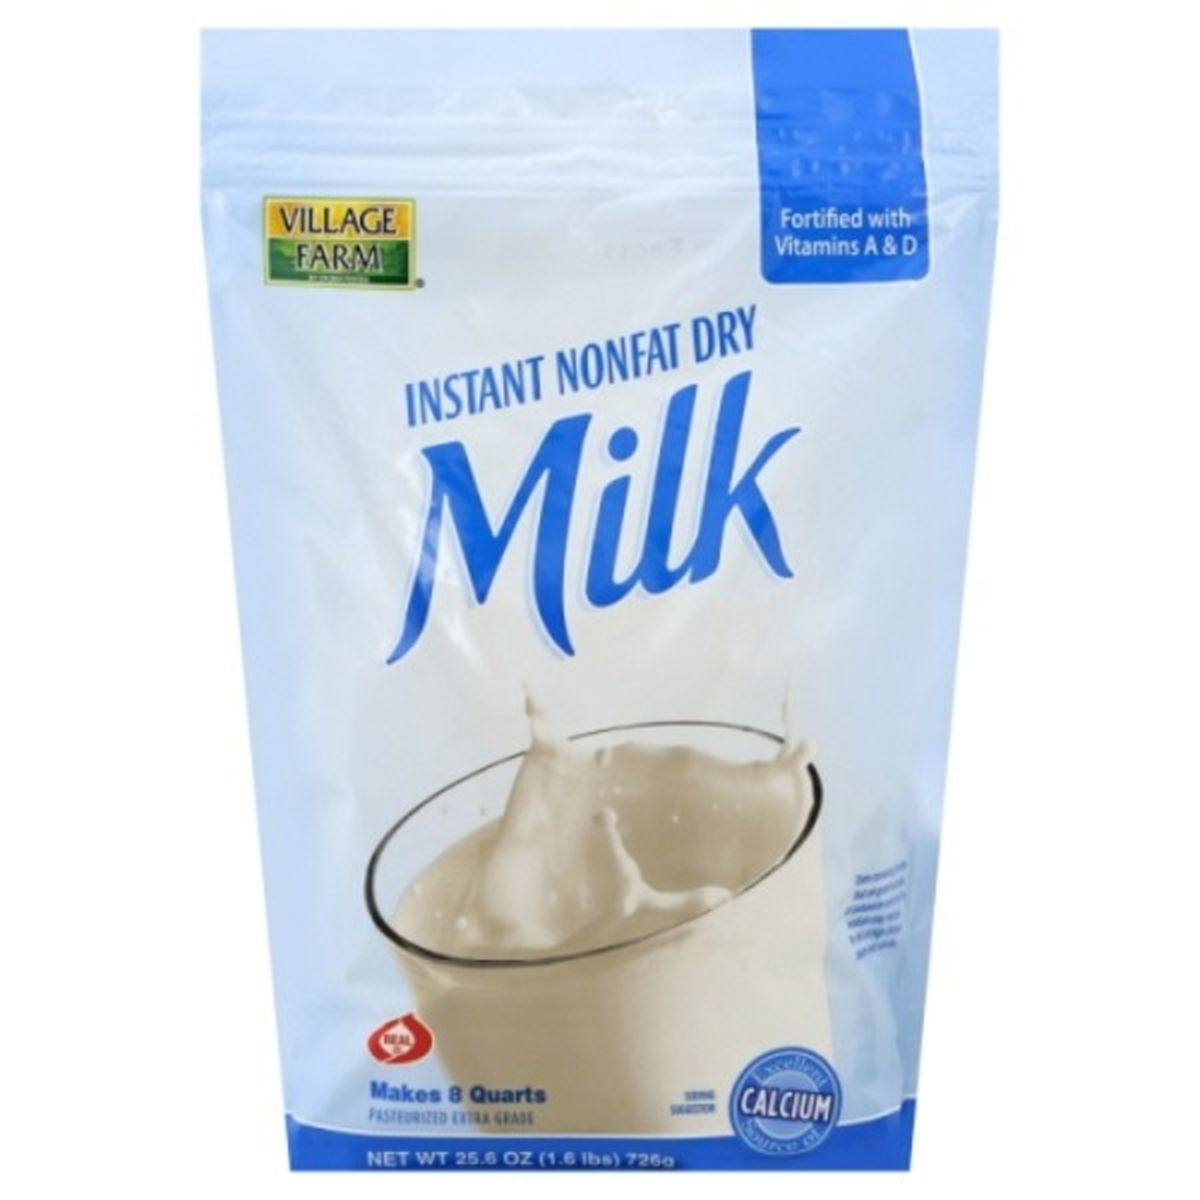 Calories in Village Farms Milk, Instant Nonfat Dry